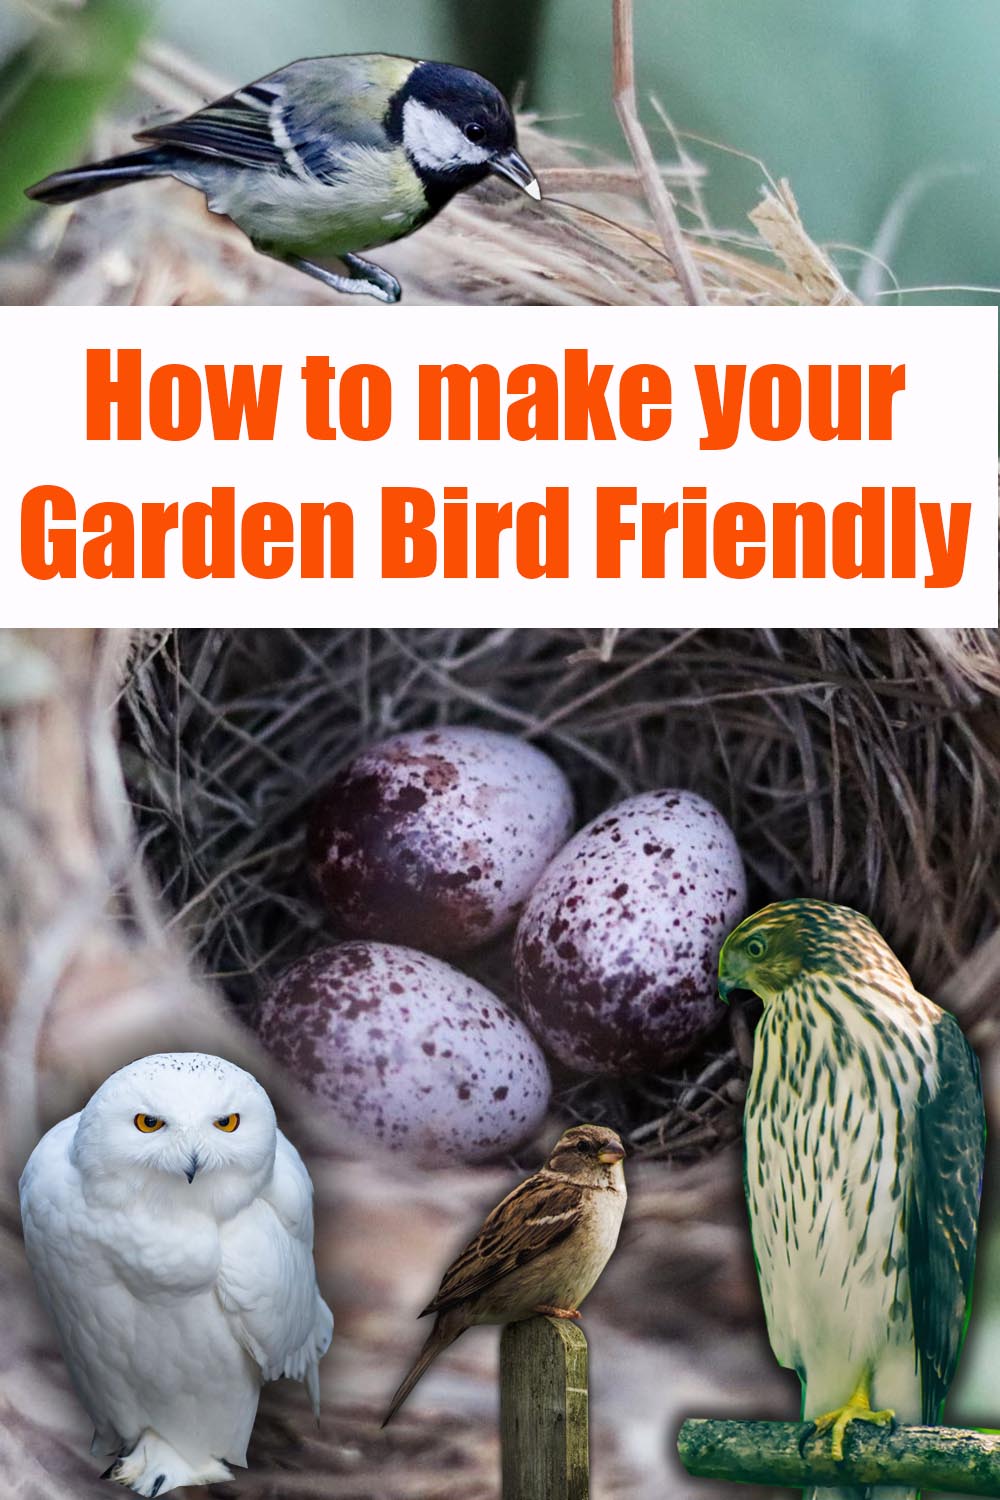 Bird friendly garden